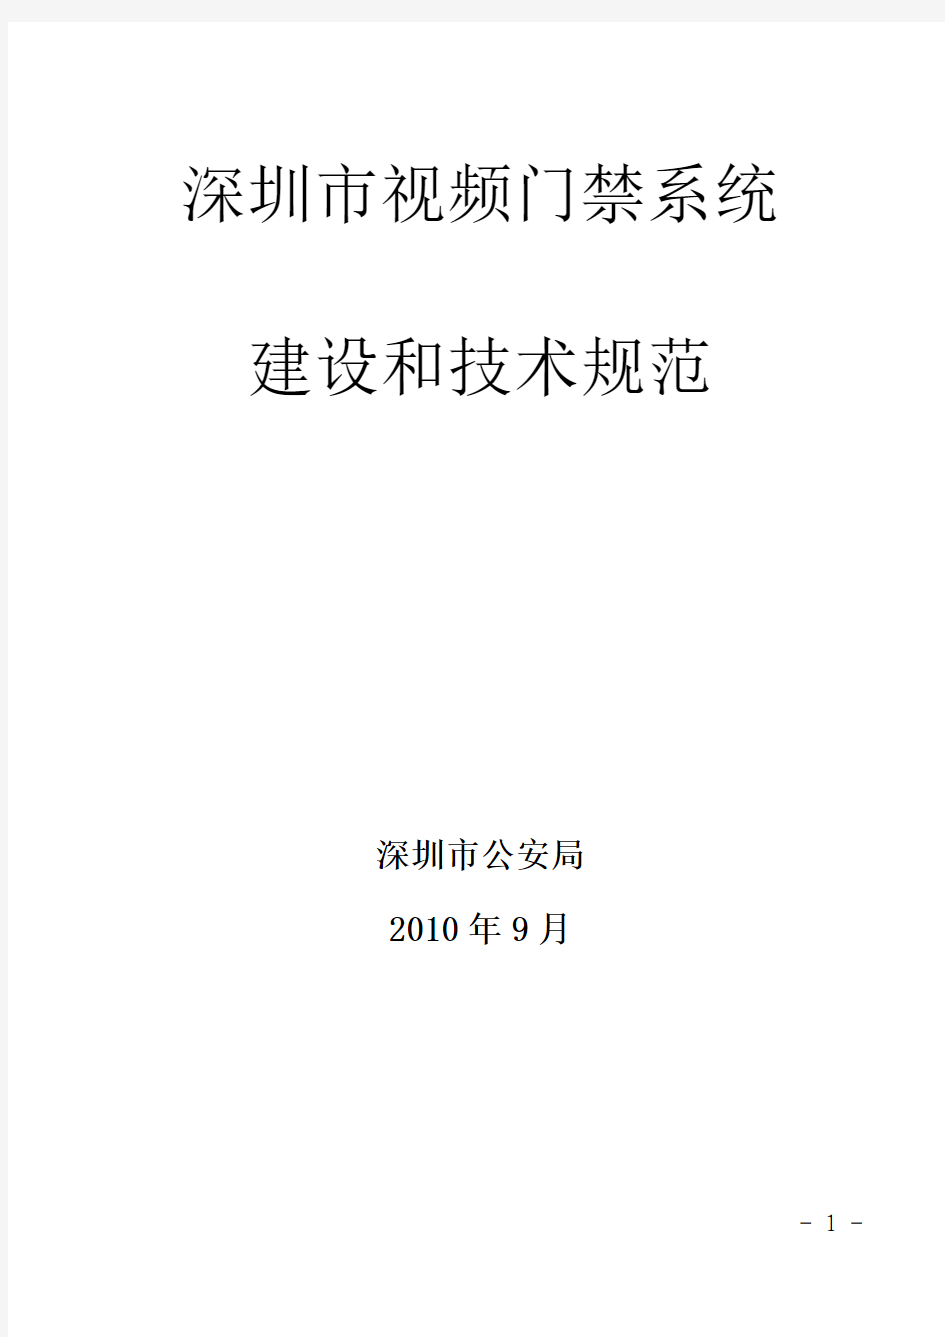 深圳市视频门禁系统建设和技术规范(附件1)